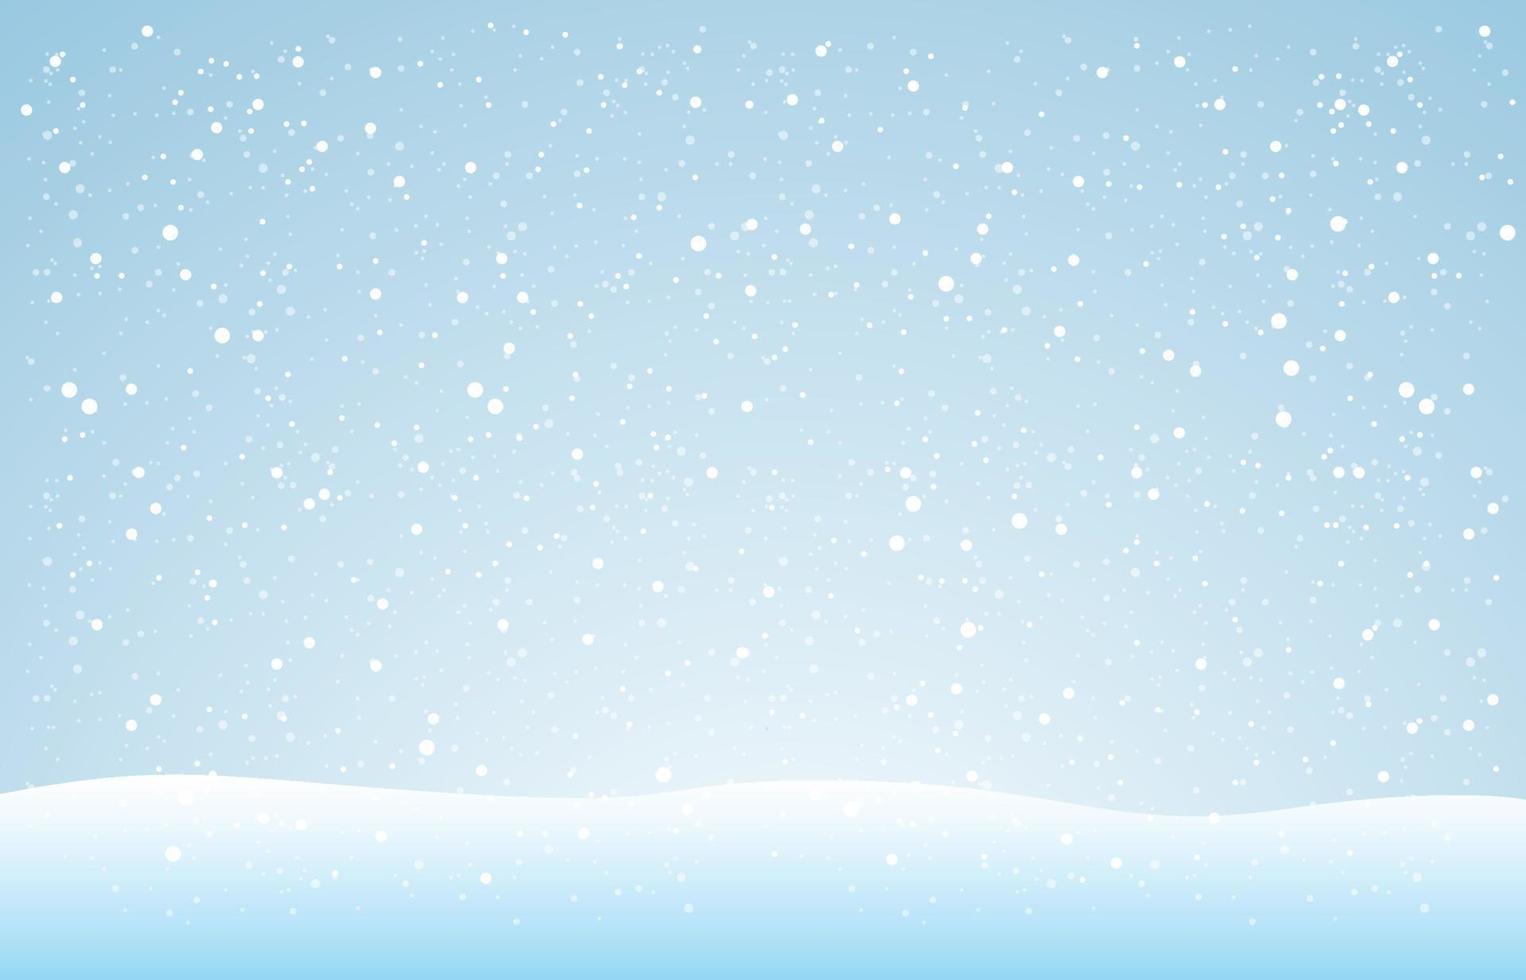 snöflingor och vinterbakgrund, julaffischer, vinterlandskap, vektordesign vektor